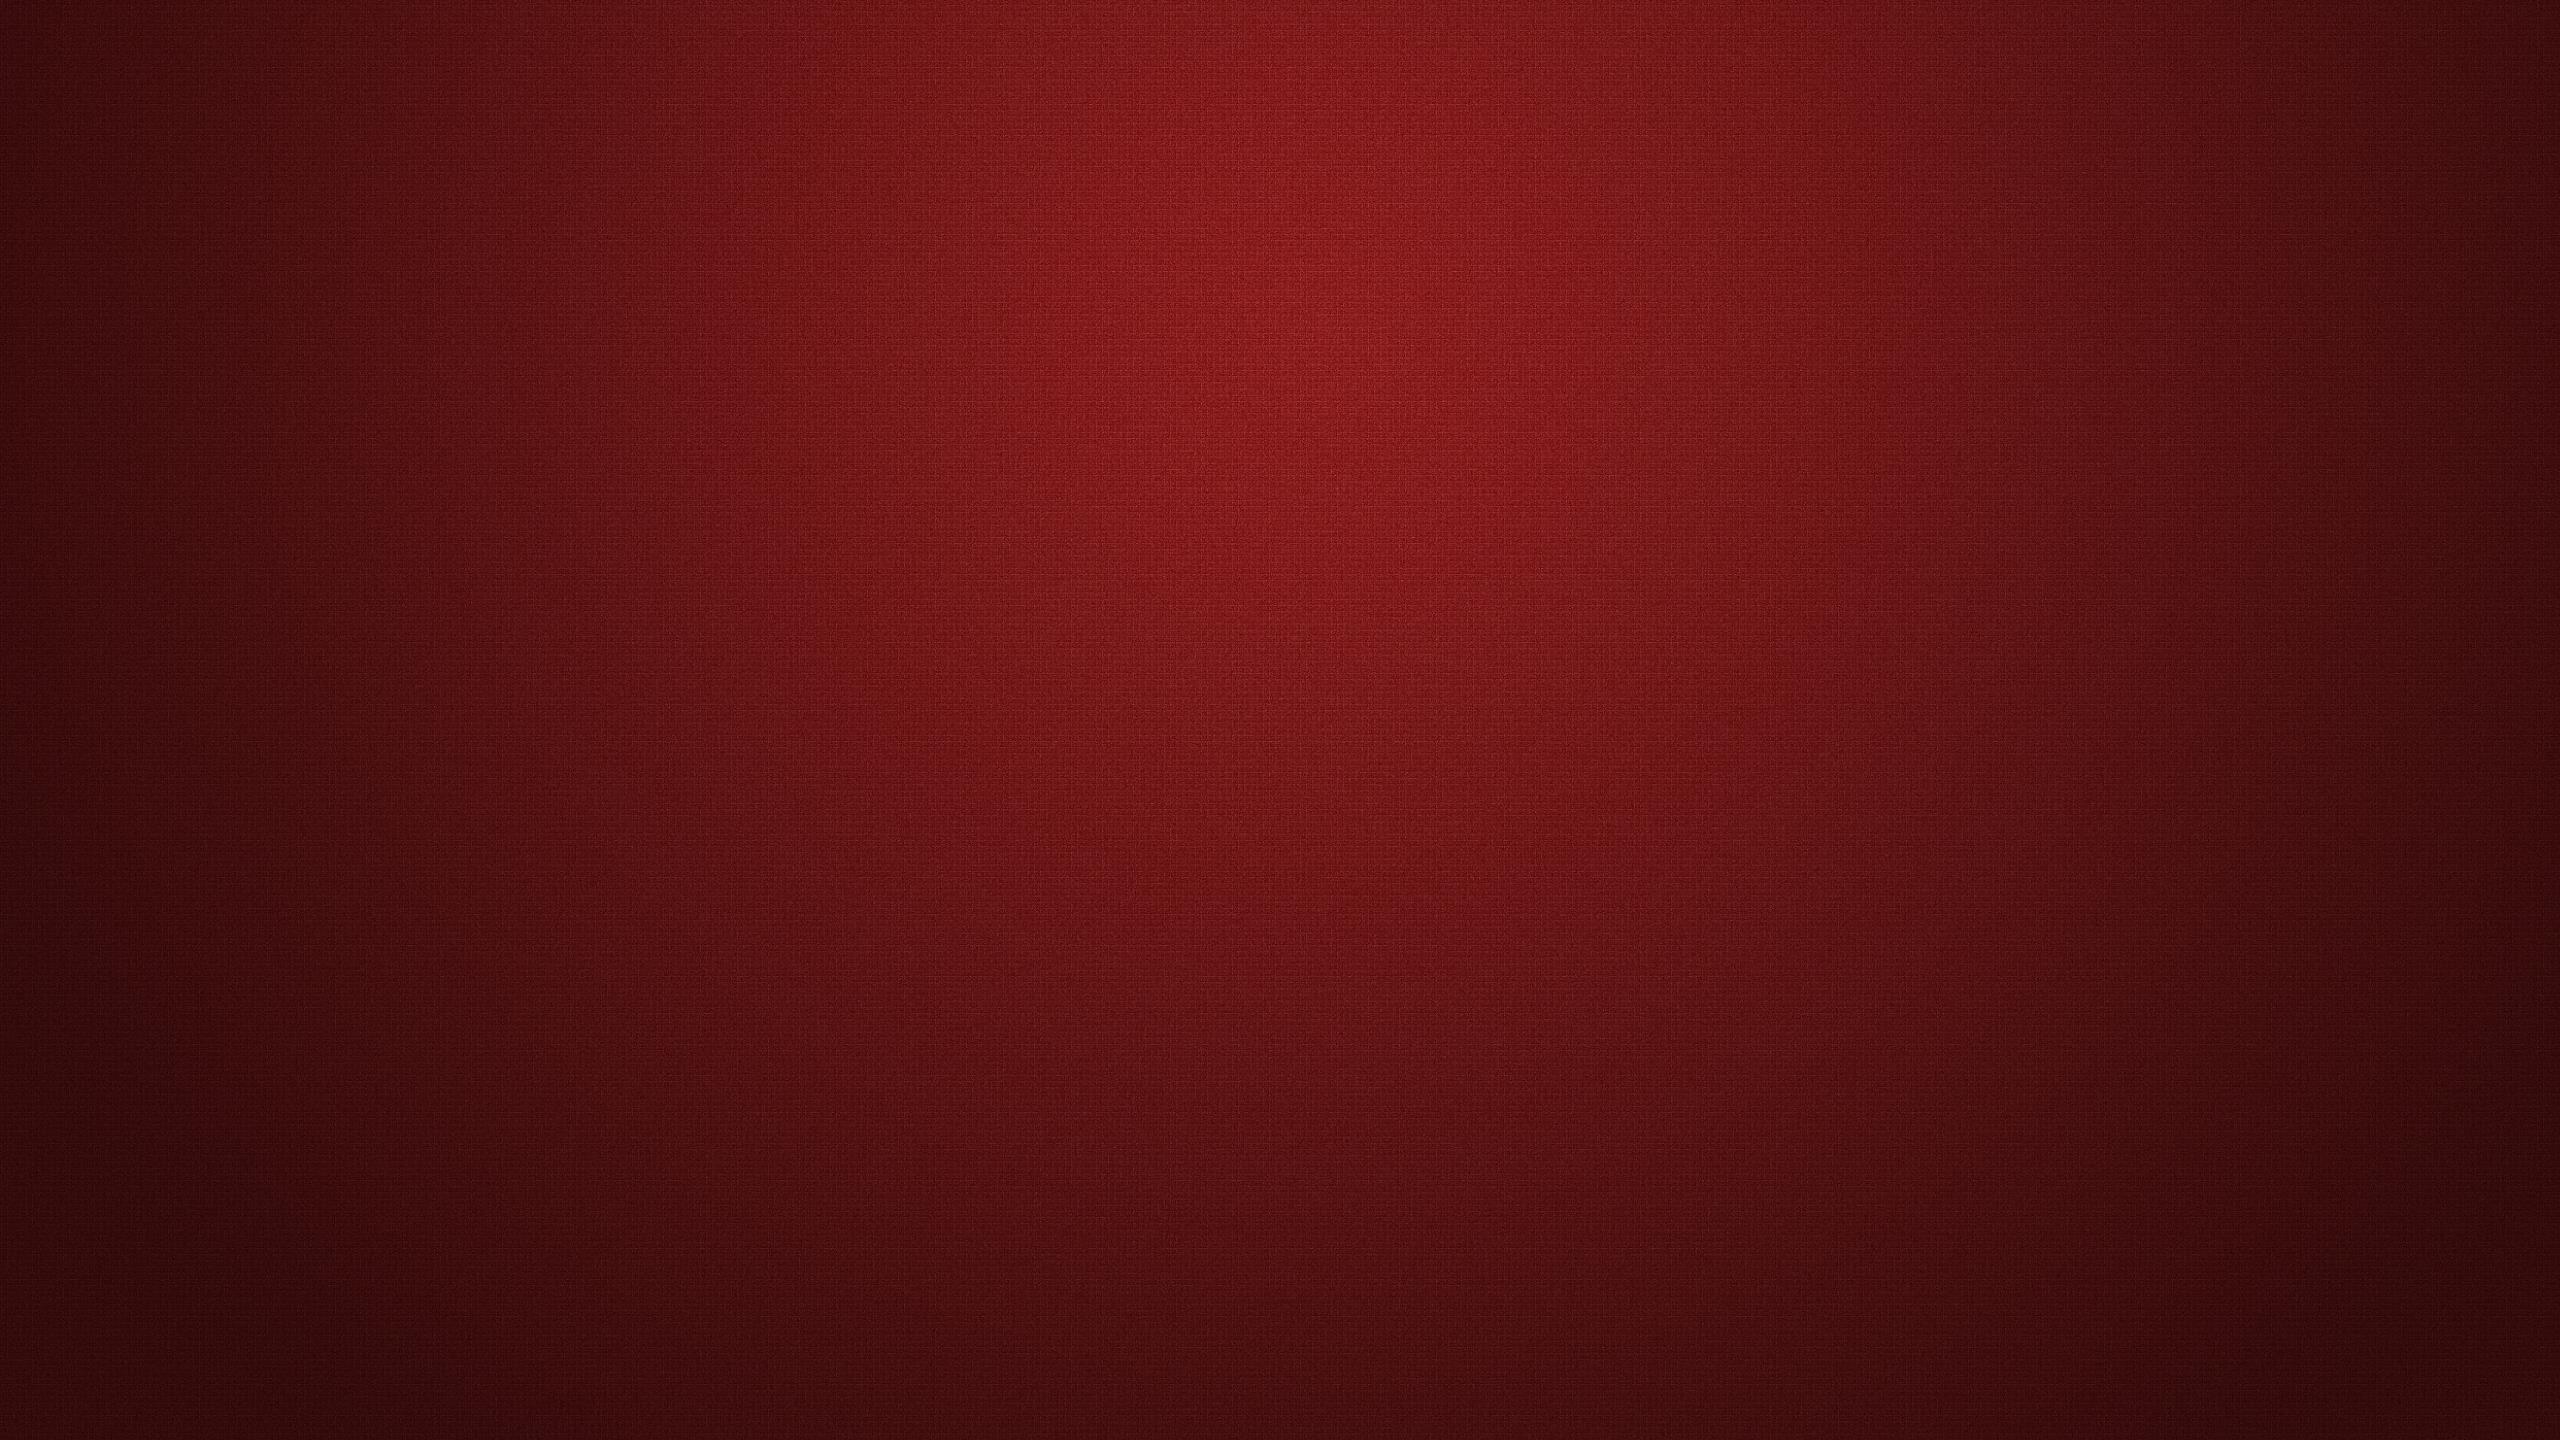 Dark Red Texture HD desktop wallpaper, Widescreen, High Definition